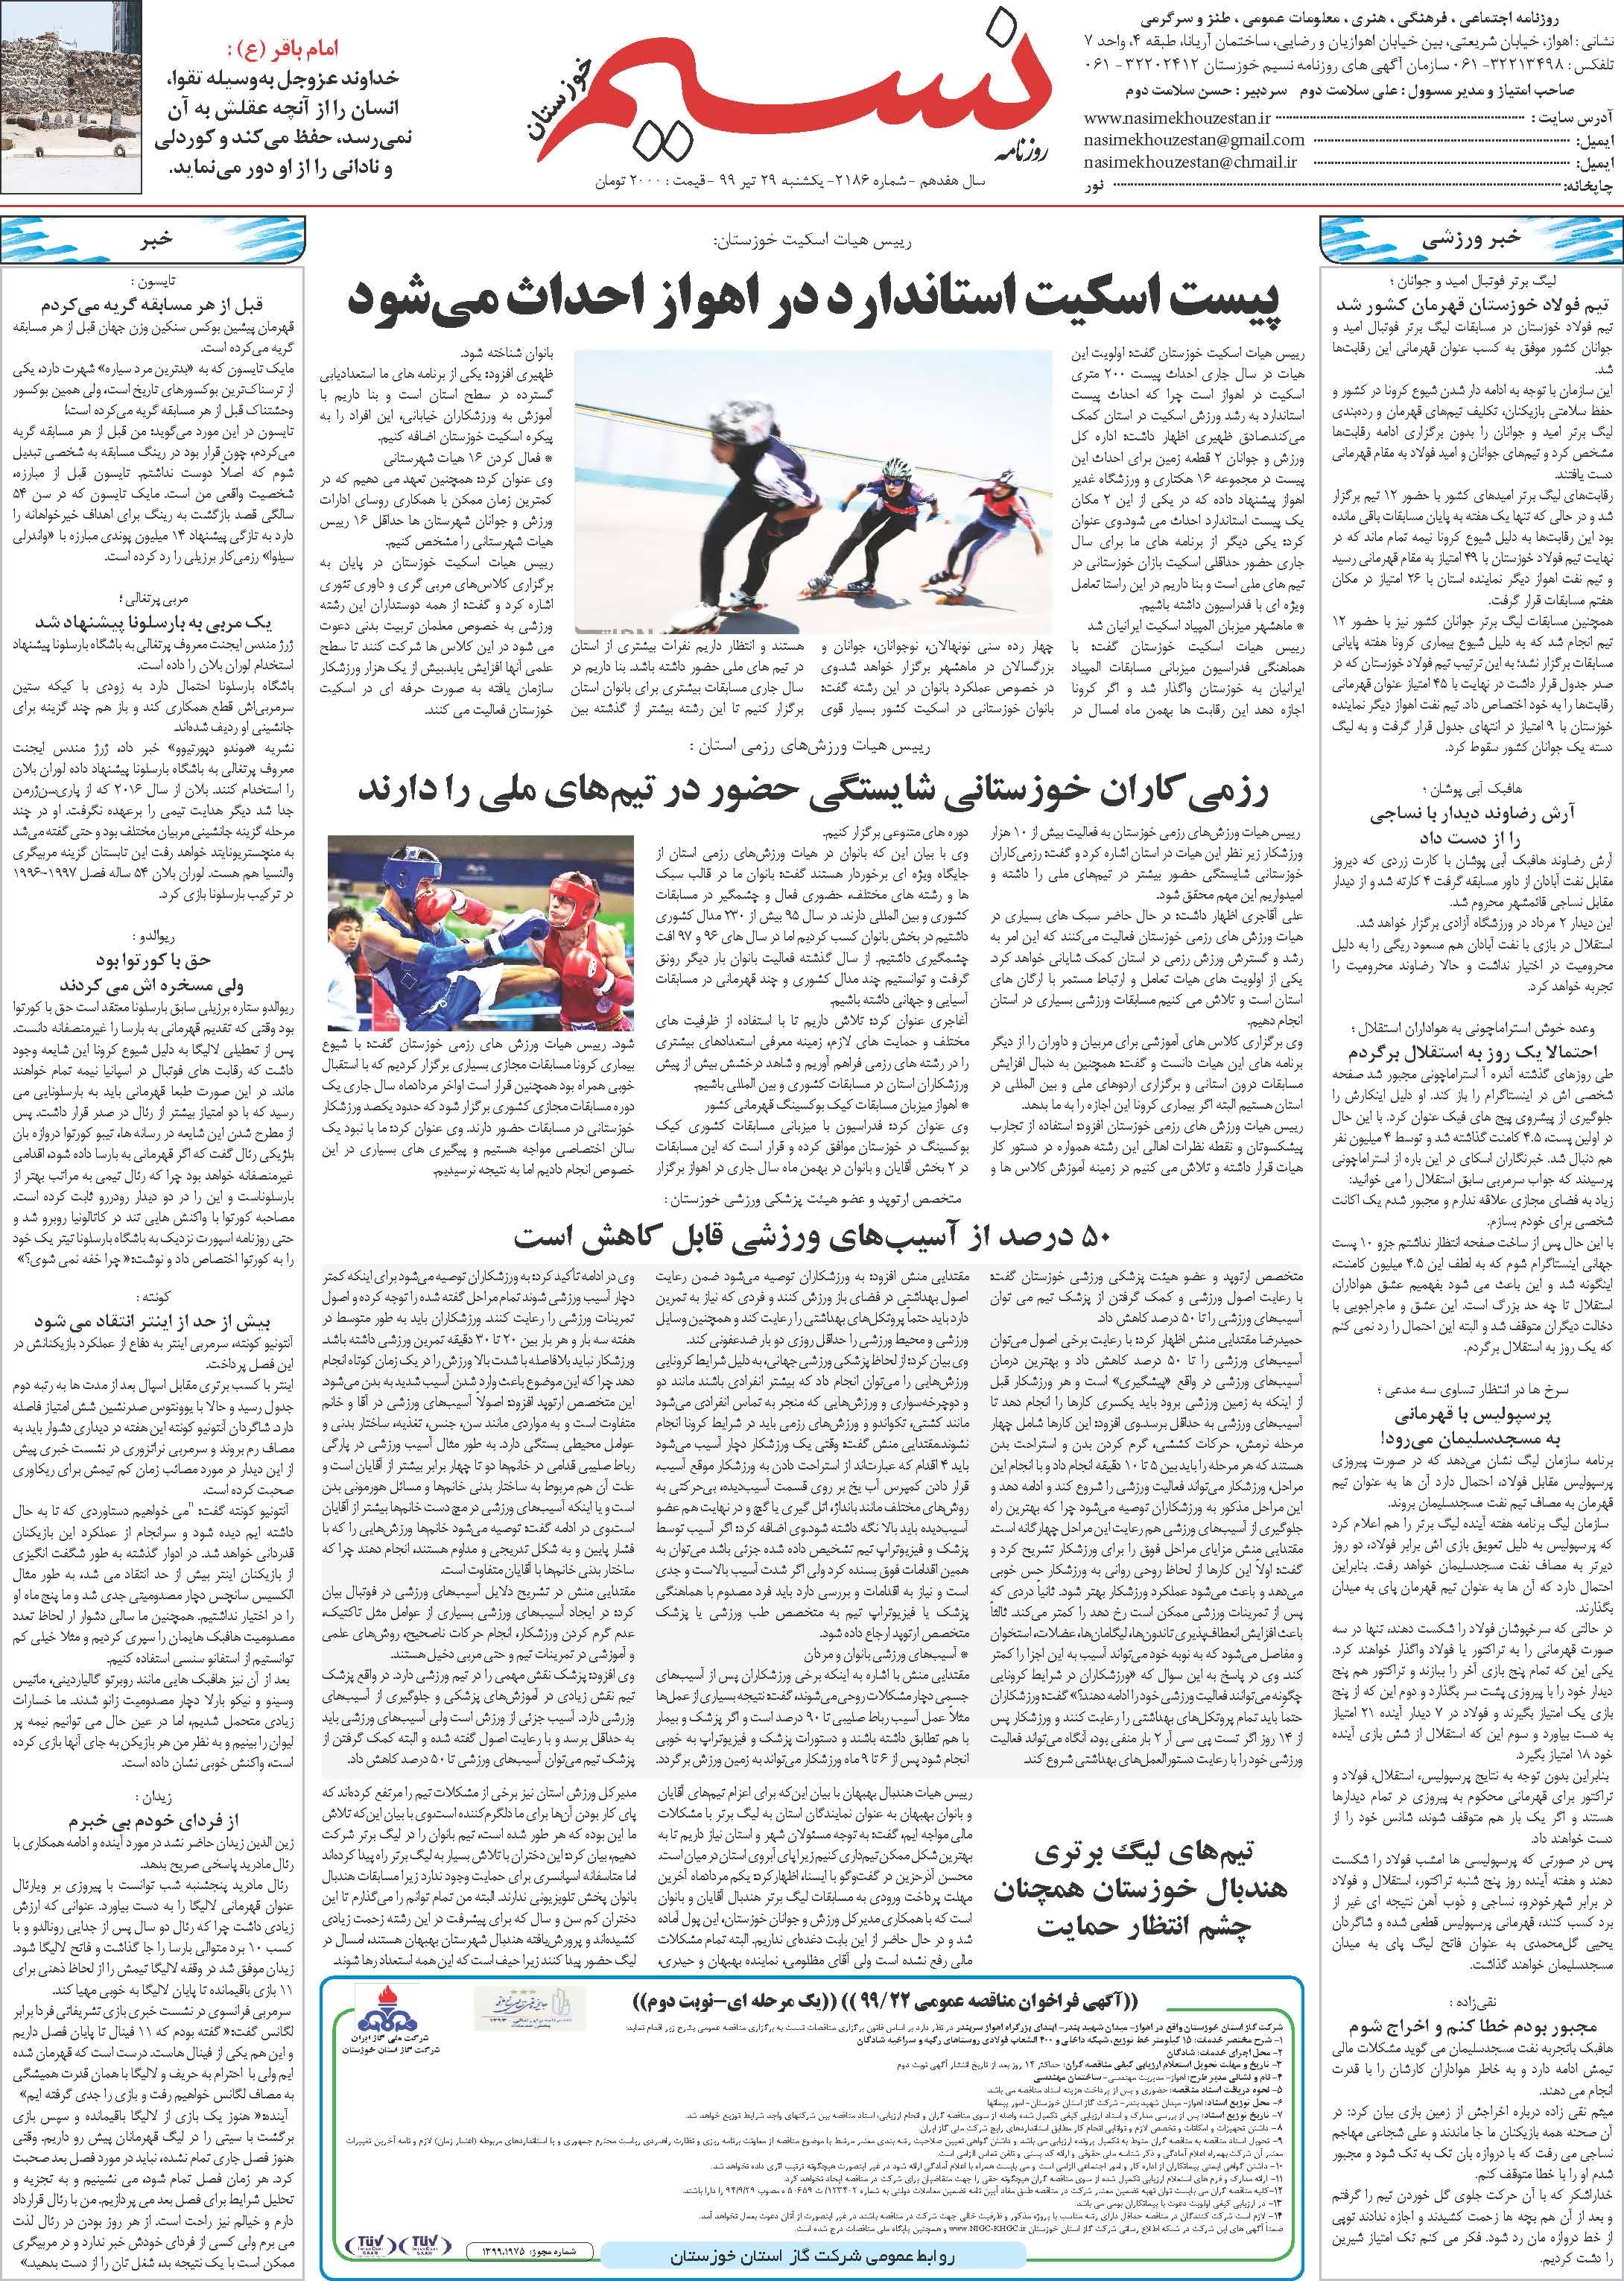 صفحه آخر روزنامه نسیم شماره 2186